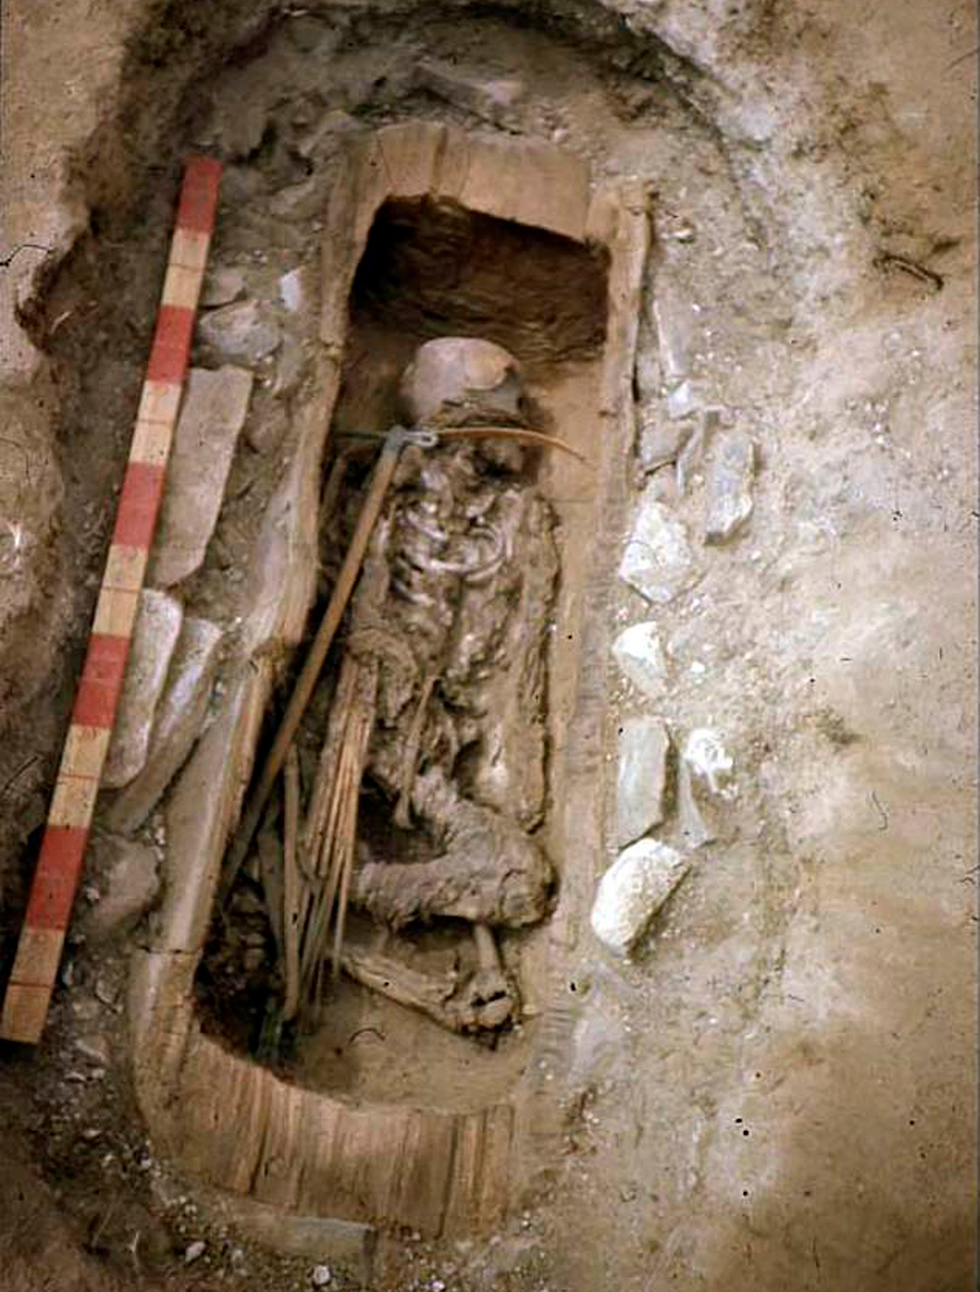 אמזונה לוחמת בת 13 סיביר נקברה עם נשק סיקיתים ()